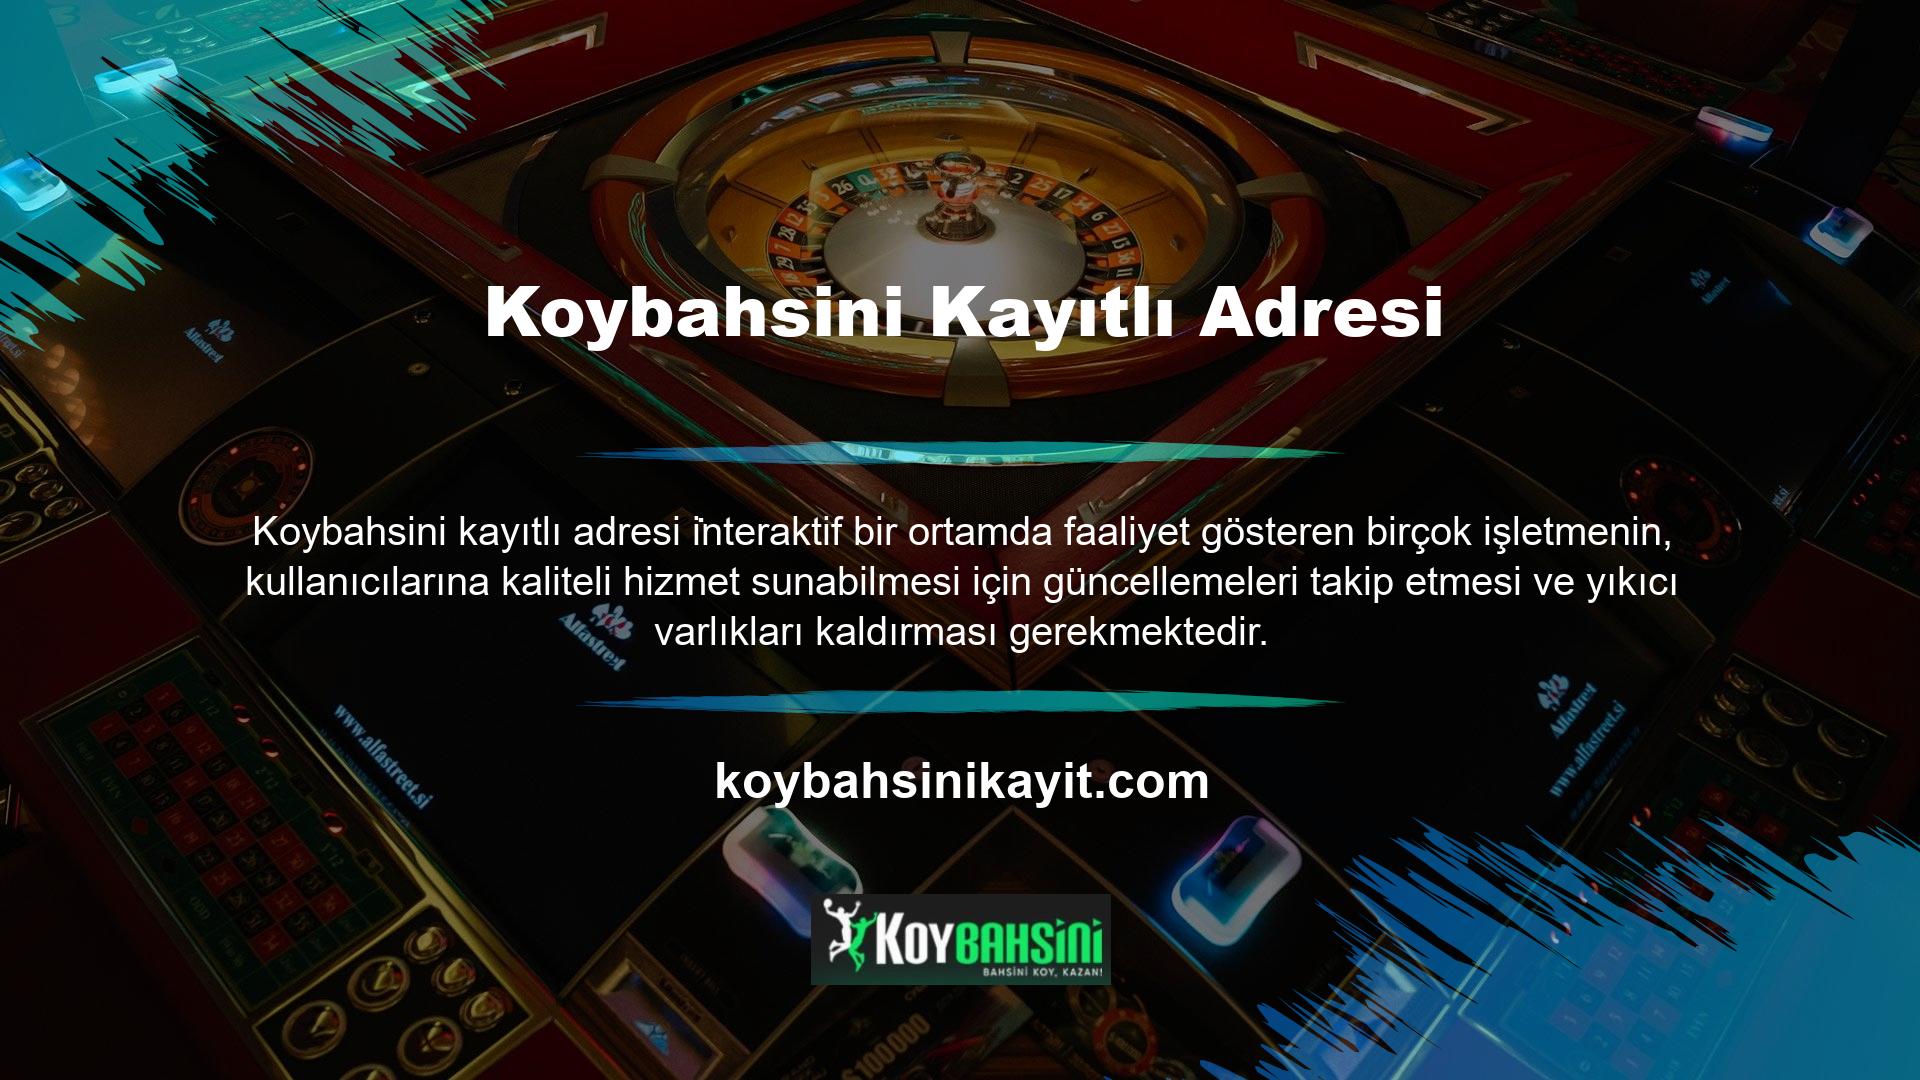 Bu durumda editörler tarafından düzenli olarak incelenen ve bozulan parçaların hızlı bir şekilde değiştirilmesi vizyonuna sahip olan Koybahsini platformu, Koybahsini kayıtlı adres hesaplarının en üst seviyesine ulaşmaktadır